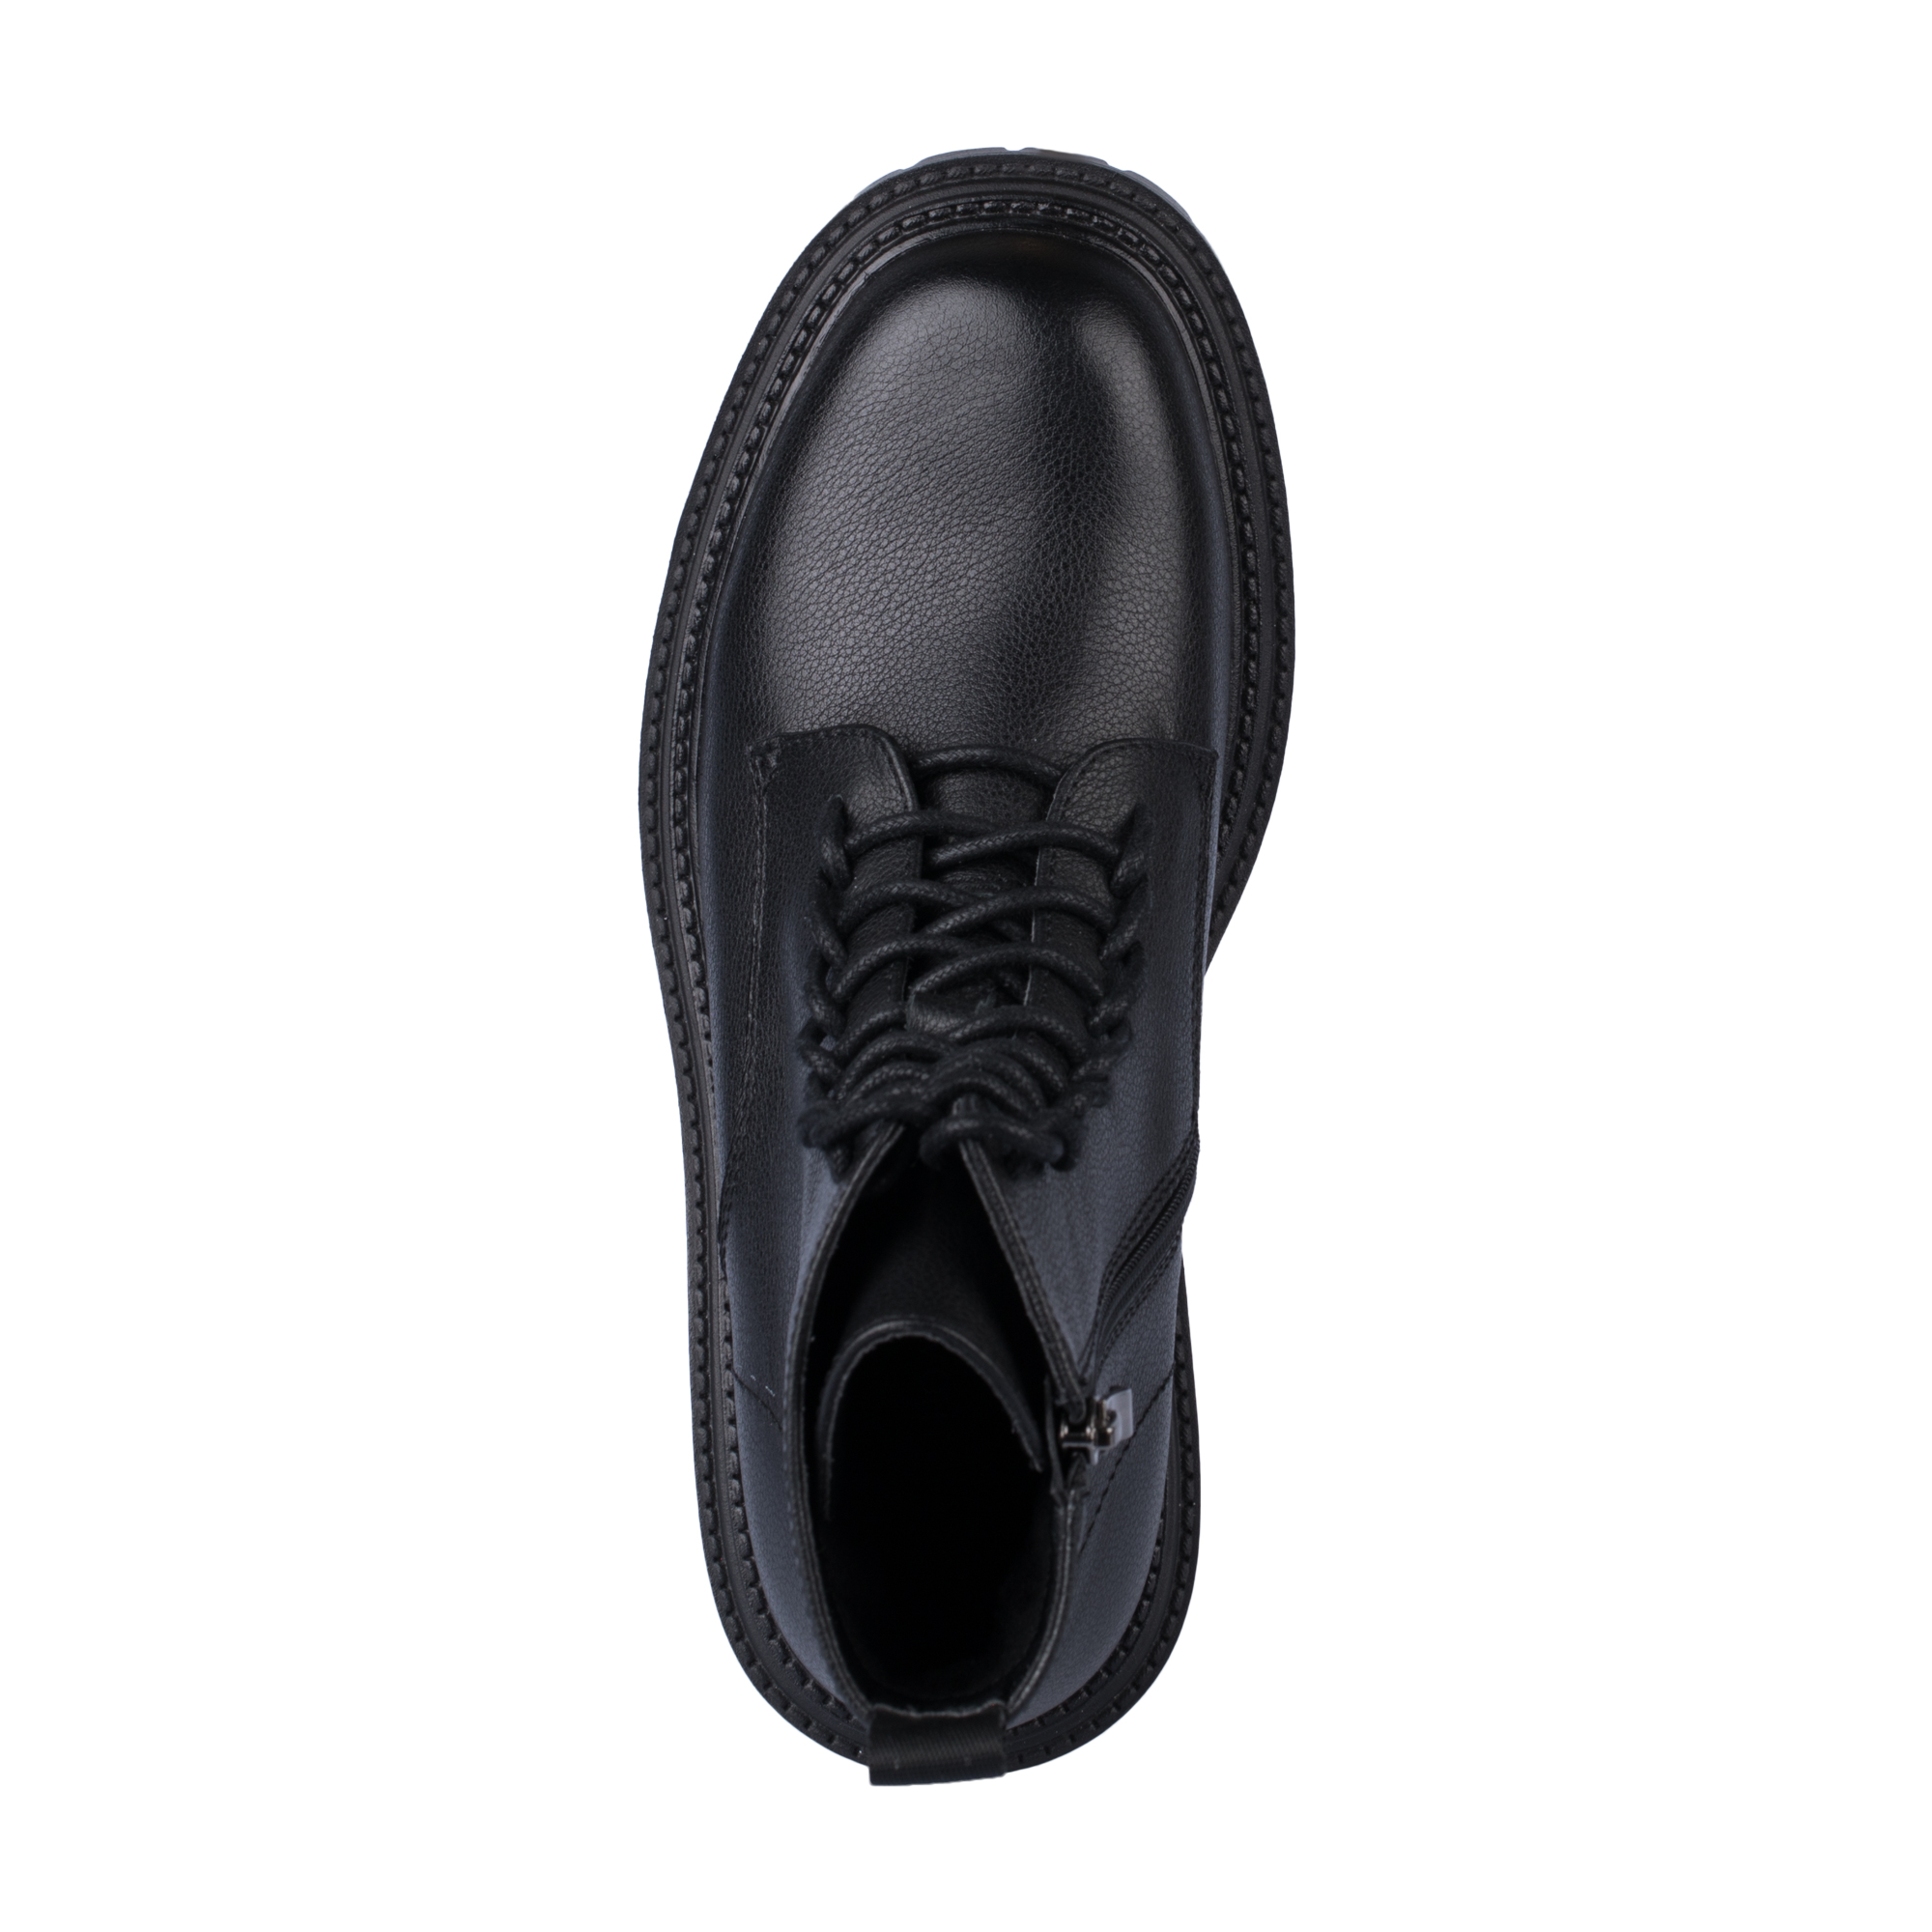 Ботинки Thomas Munz 233-958A-5102, цвет черный, размер 36 - фото 5